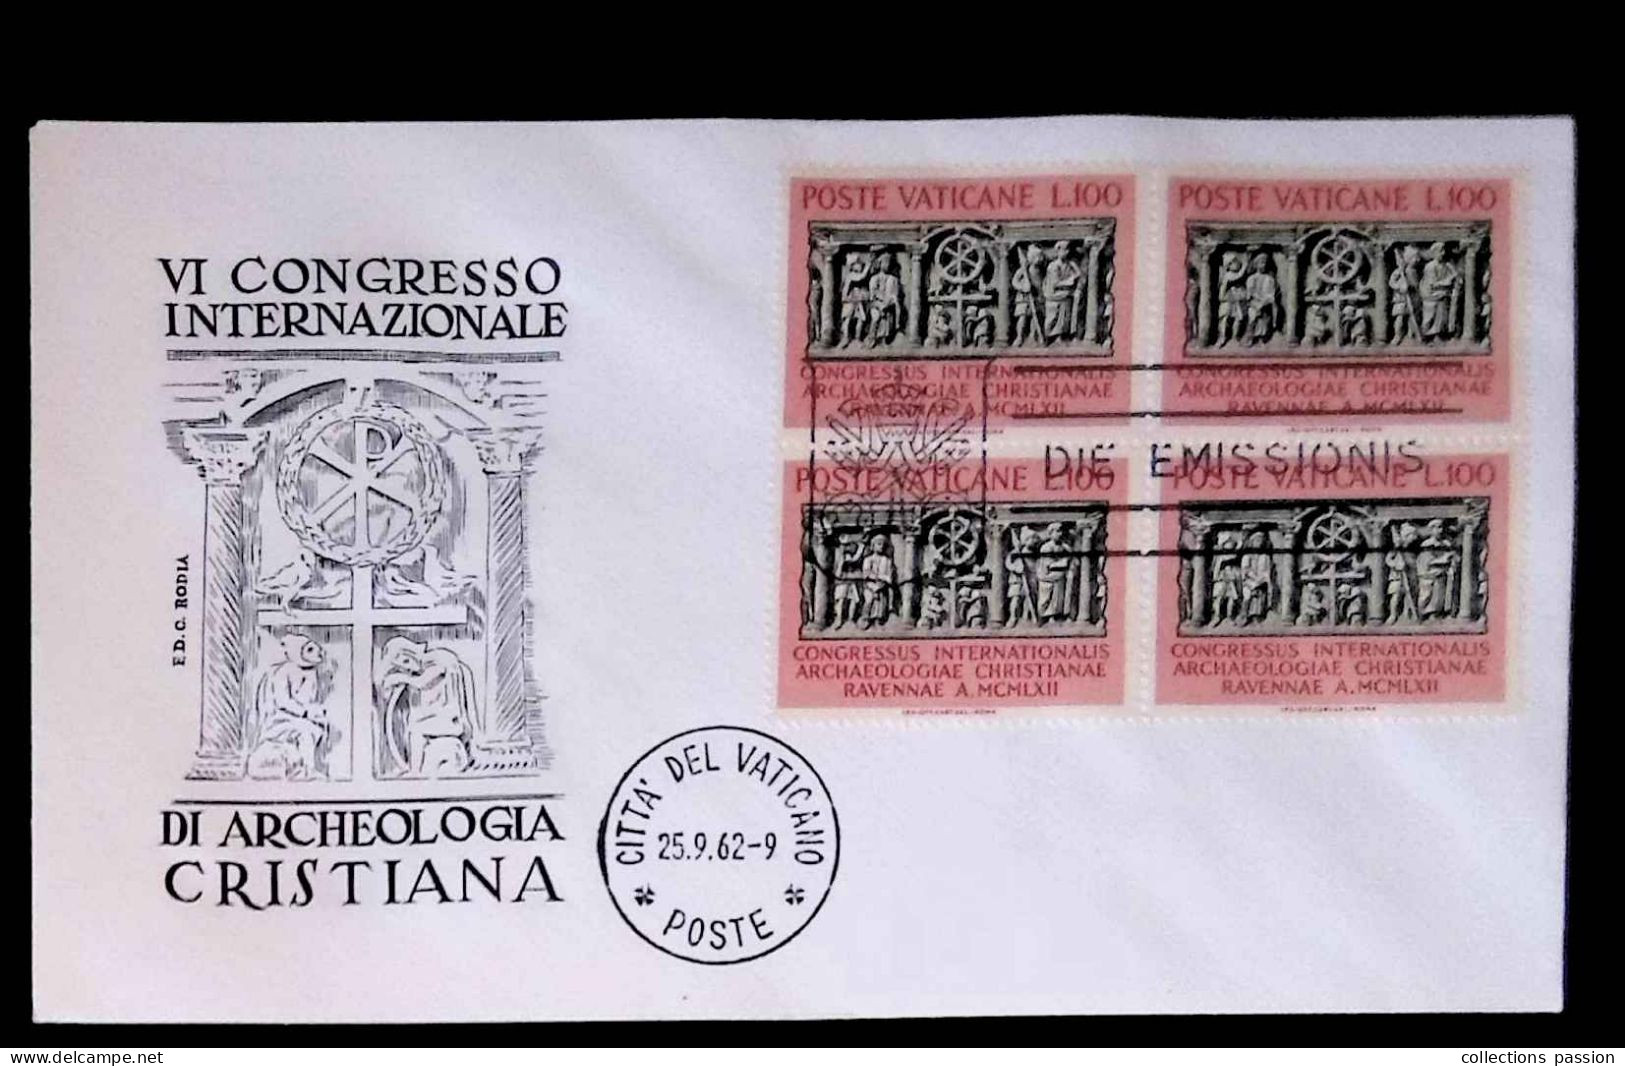 CL, FDC, Premier Jour, Cita Del Vaticano, Poste, 25.9.62, 1962, Die Emissionis, VI Congresso Di Archeologia Cristiana - FDC